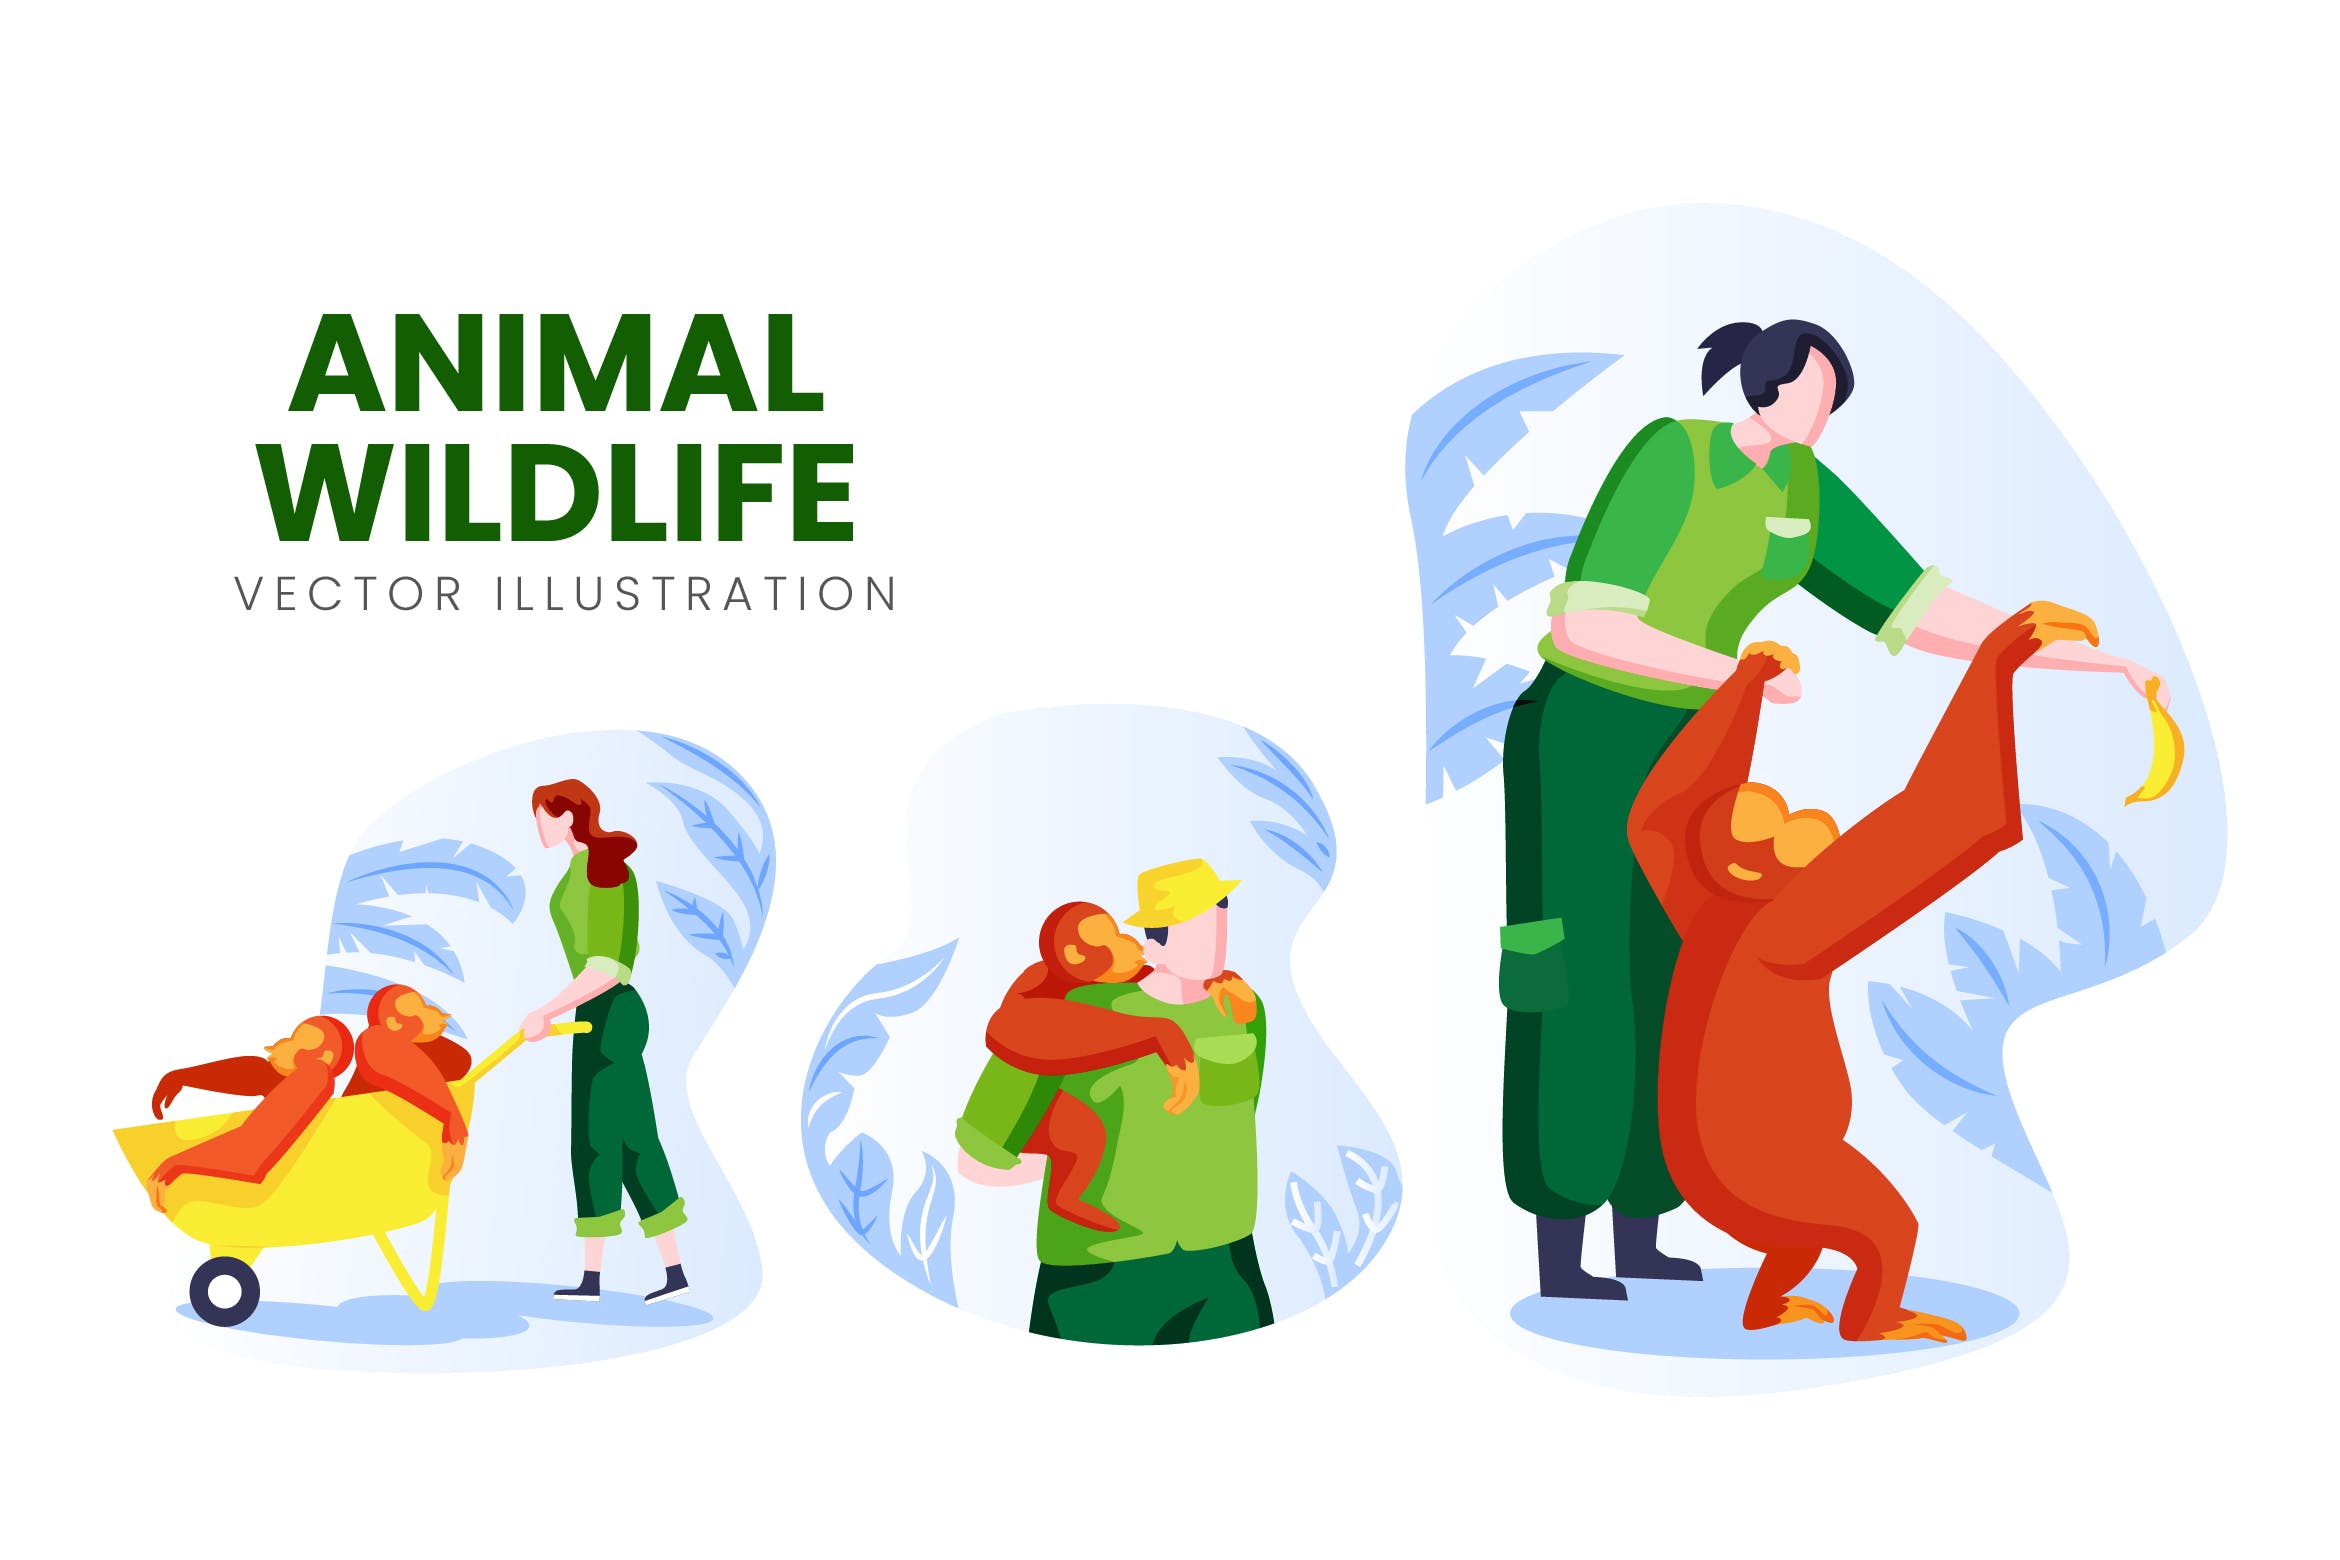 野生动物保育员人物形象16图库精选手绘插画矢量素材 Animal Wildlife Vector Character Set插图